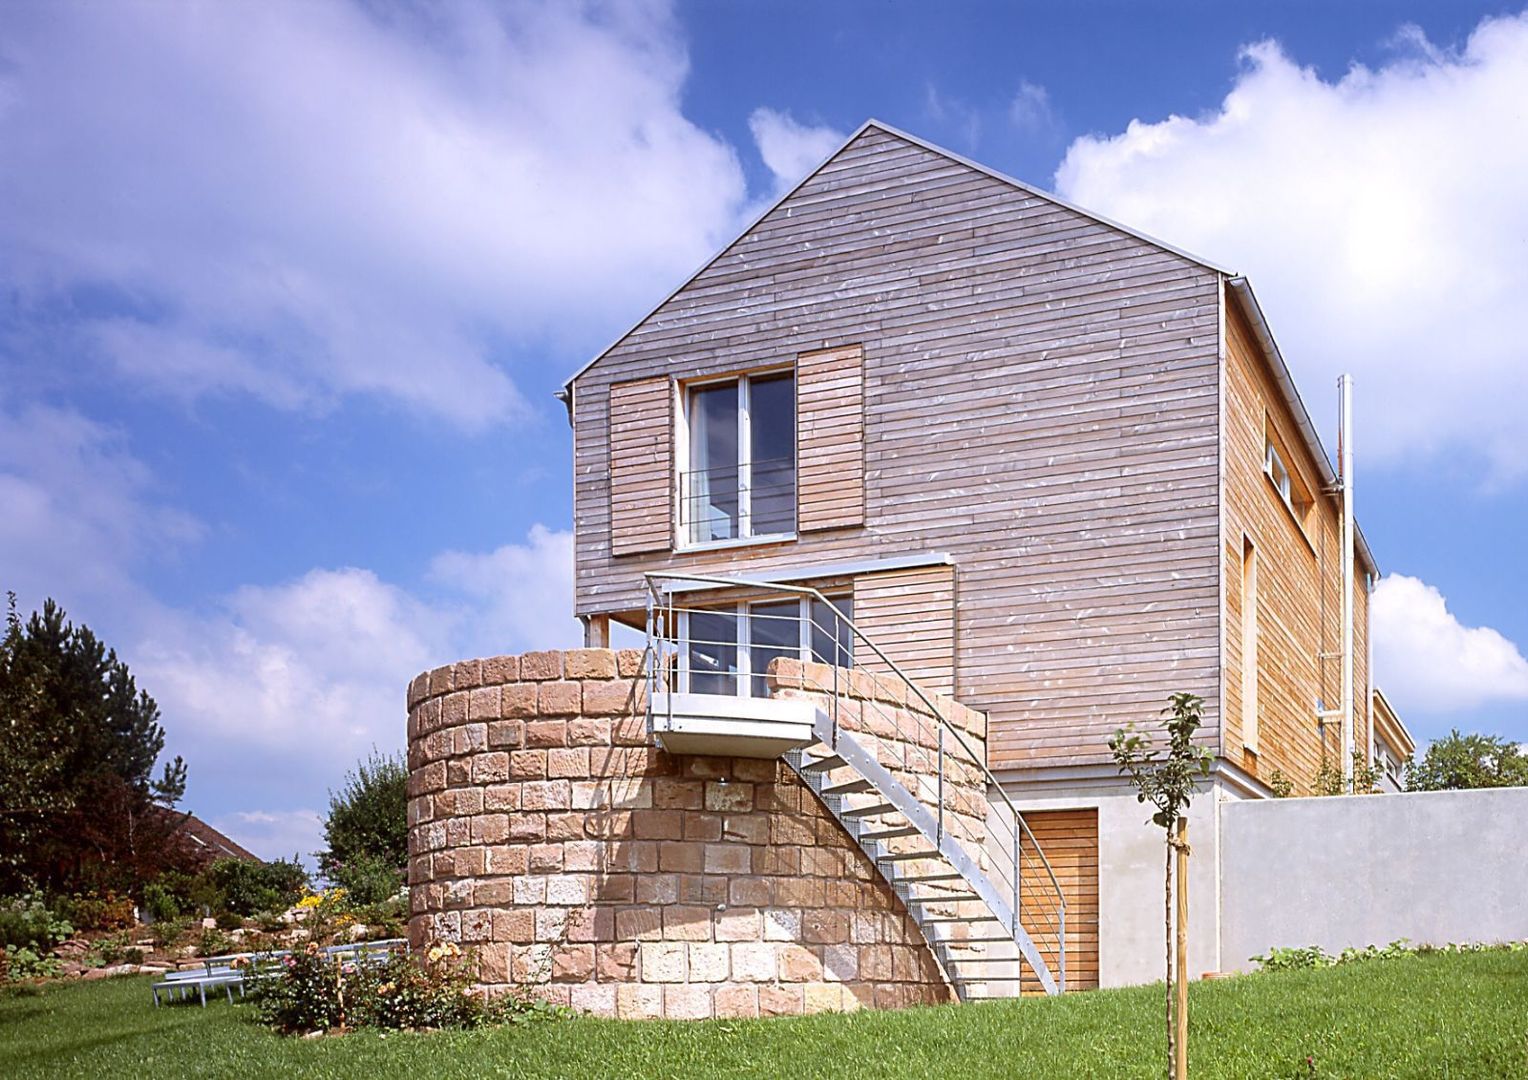 Einfamilien Wohnhaus in Holzständerkonstruktion, Jarcke Architekten Jarcke Architekten Moderne huizen